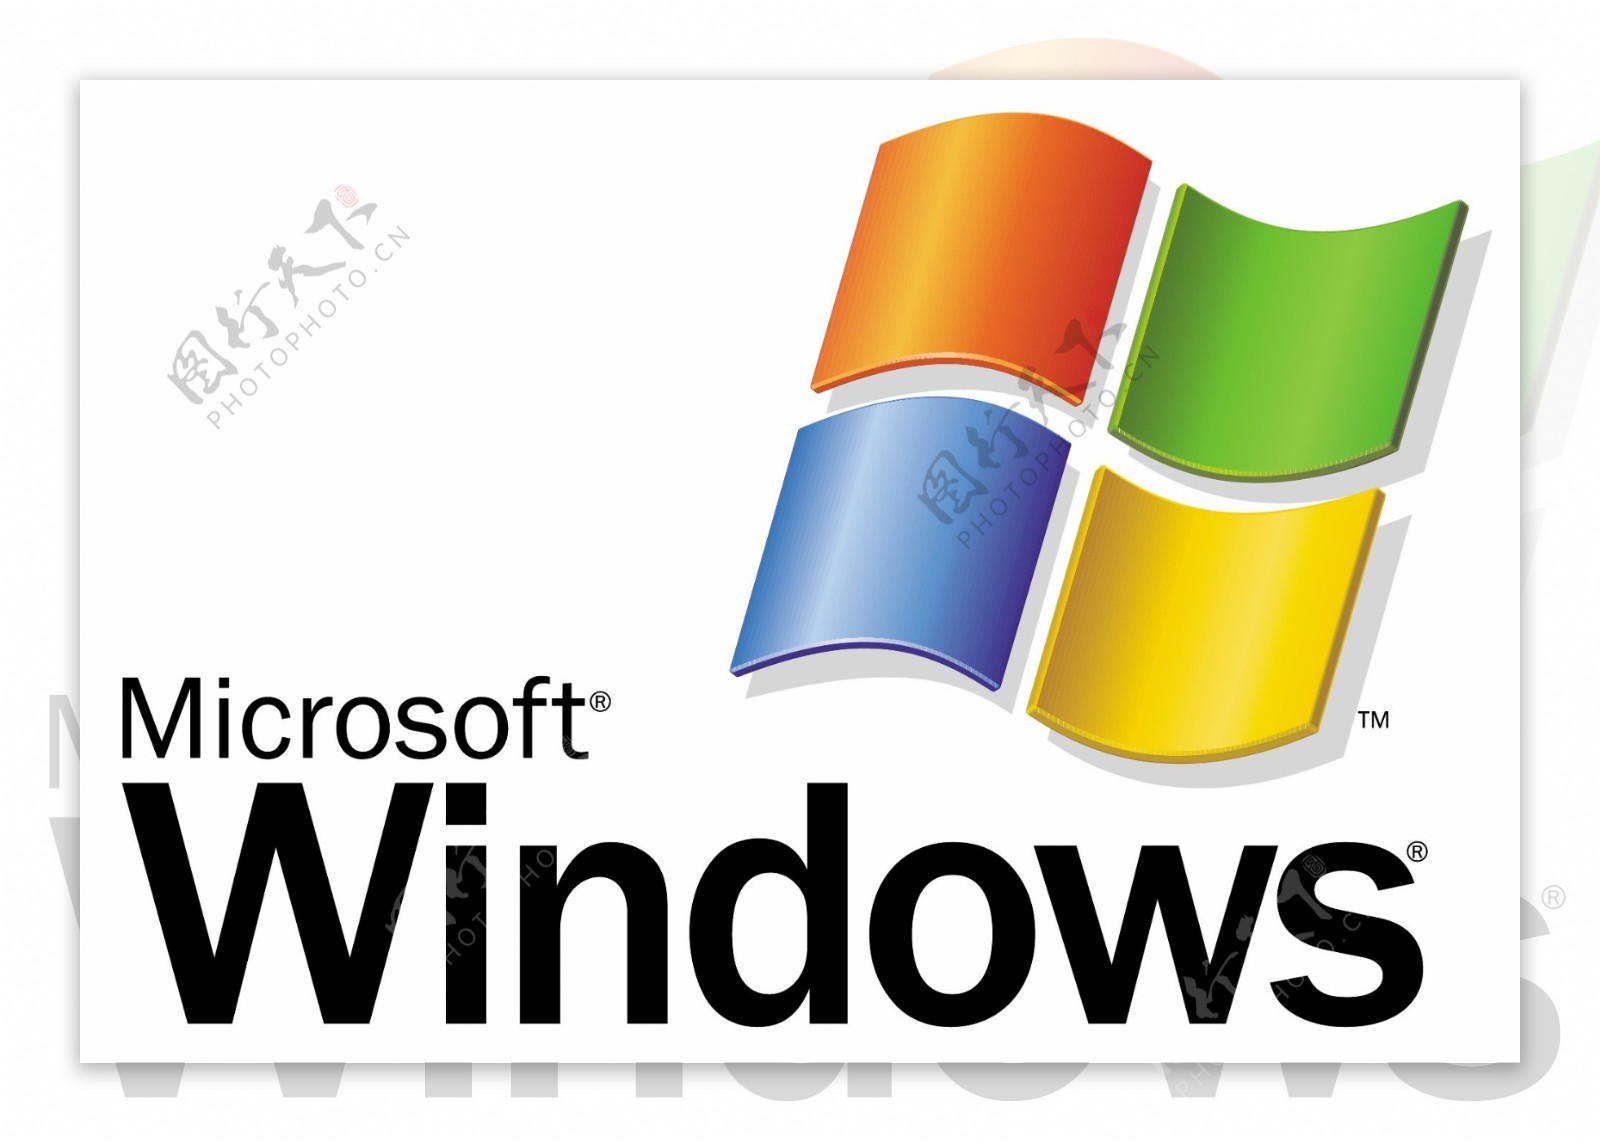 微软的Windows1